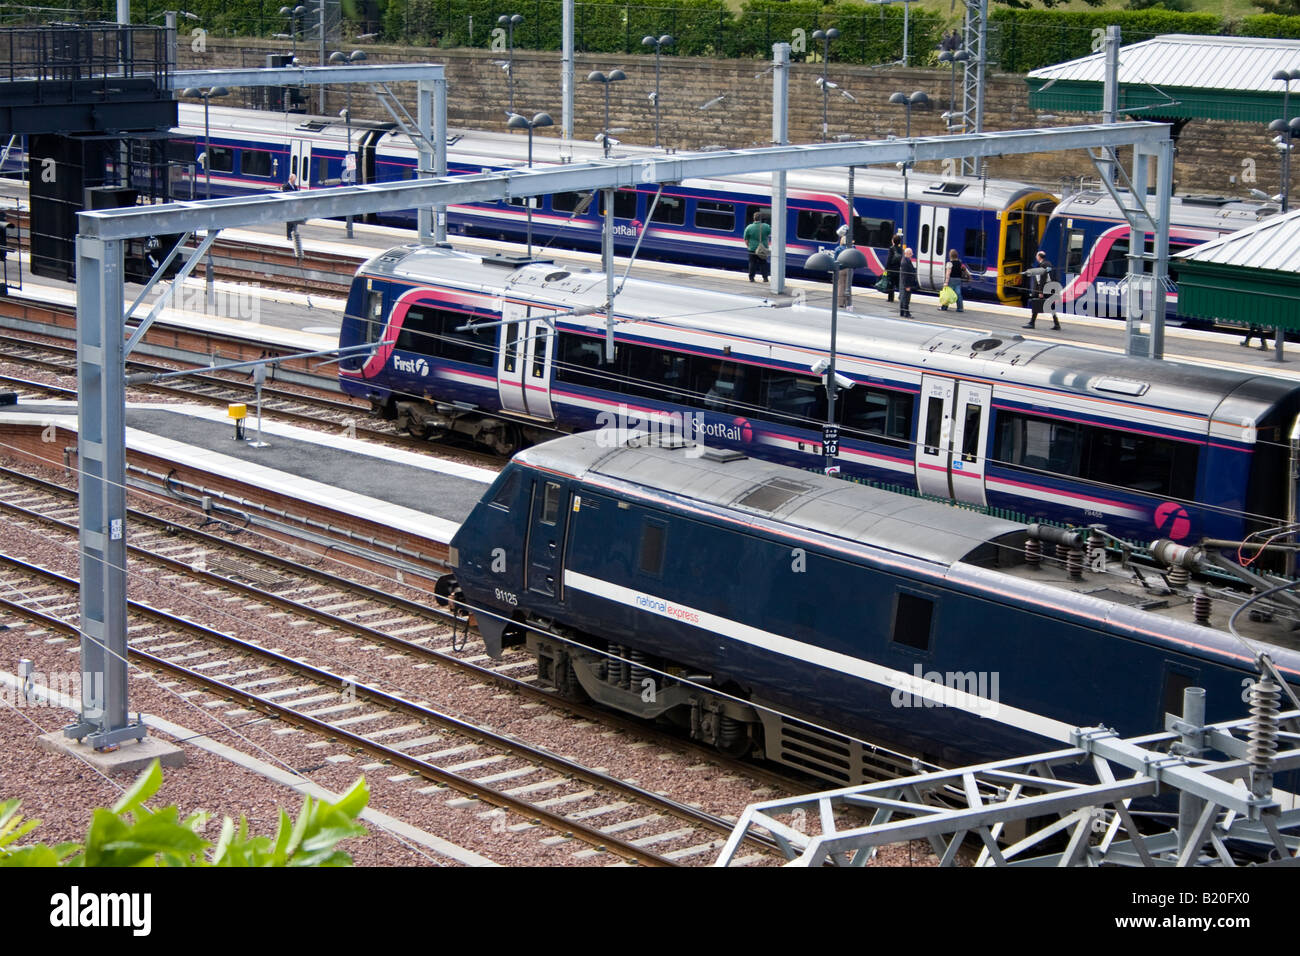 La gare de Waverley dans le centre-ville d'Édimbourg - National Express et les trains Scotrail sur les plates-formes dans la gare Banque D'Images